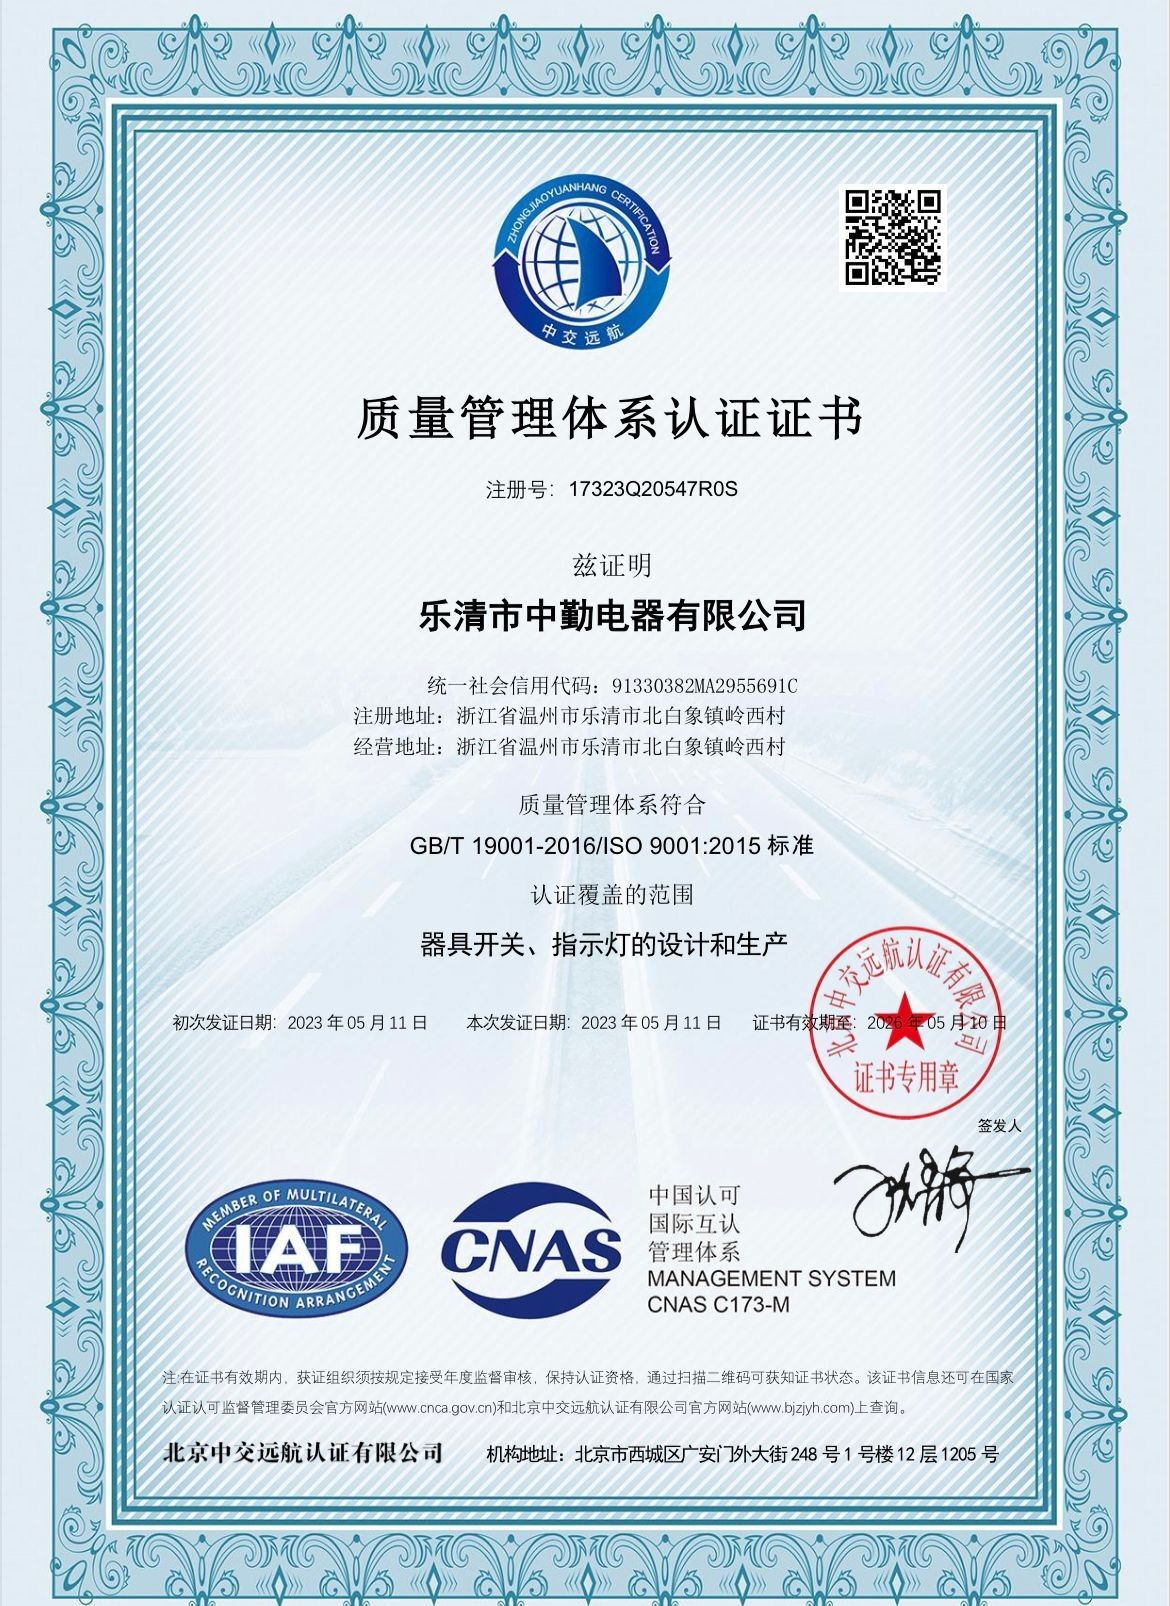 祝贺我公司通过ISO9001质量体系认证